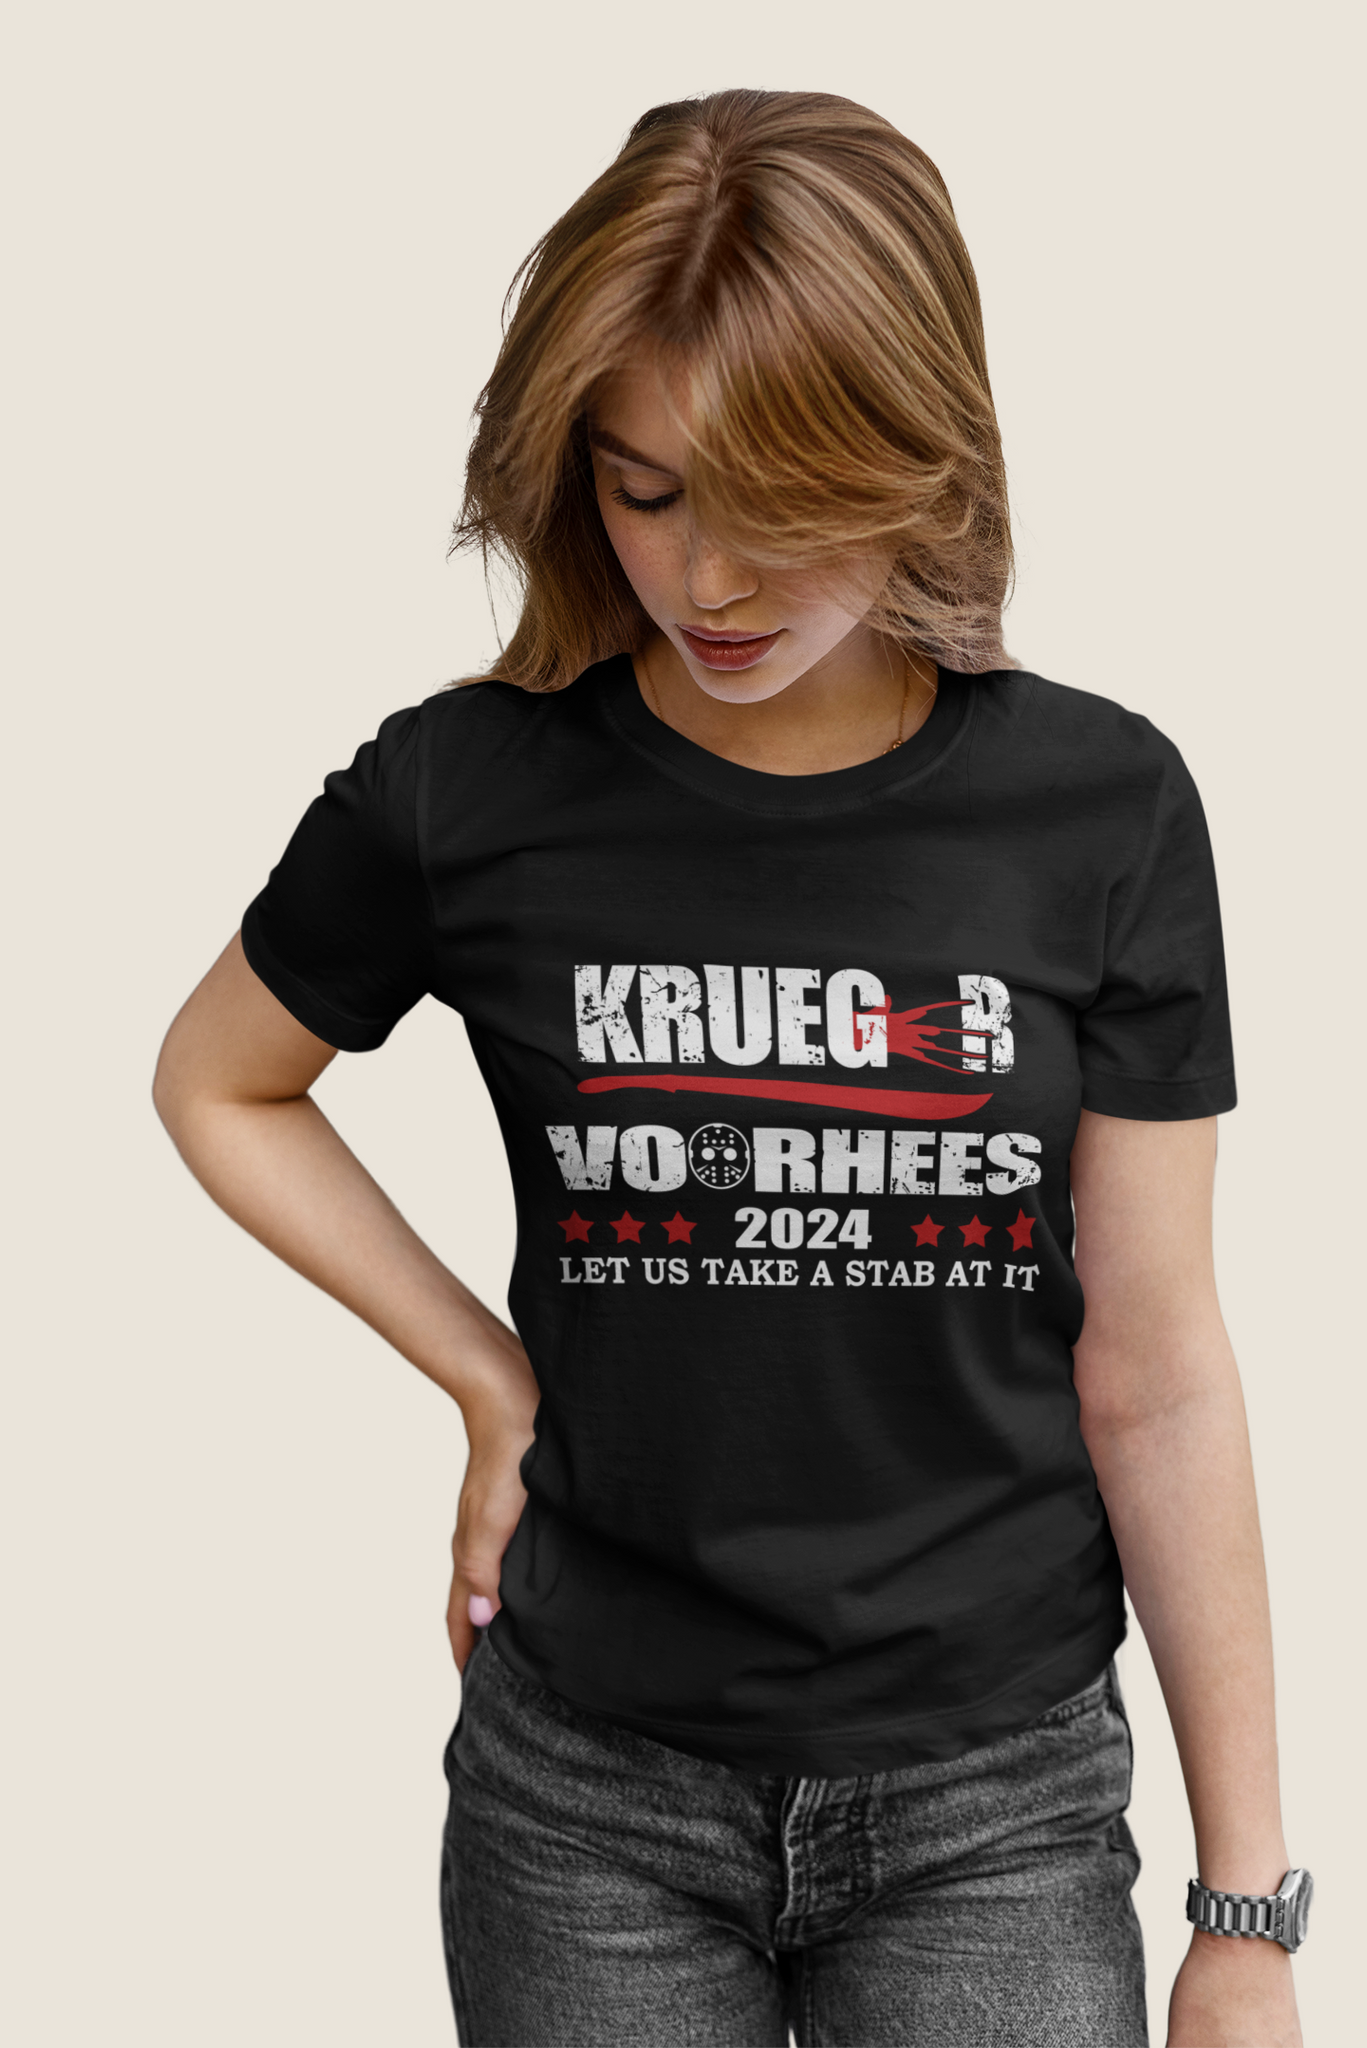 Nightmare On Elm Street T Shirt, Let Us Take A Stab At It T Shirt, Krueger Voorhees President 2024 Tshirt